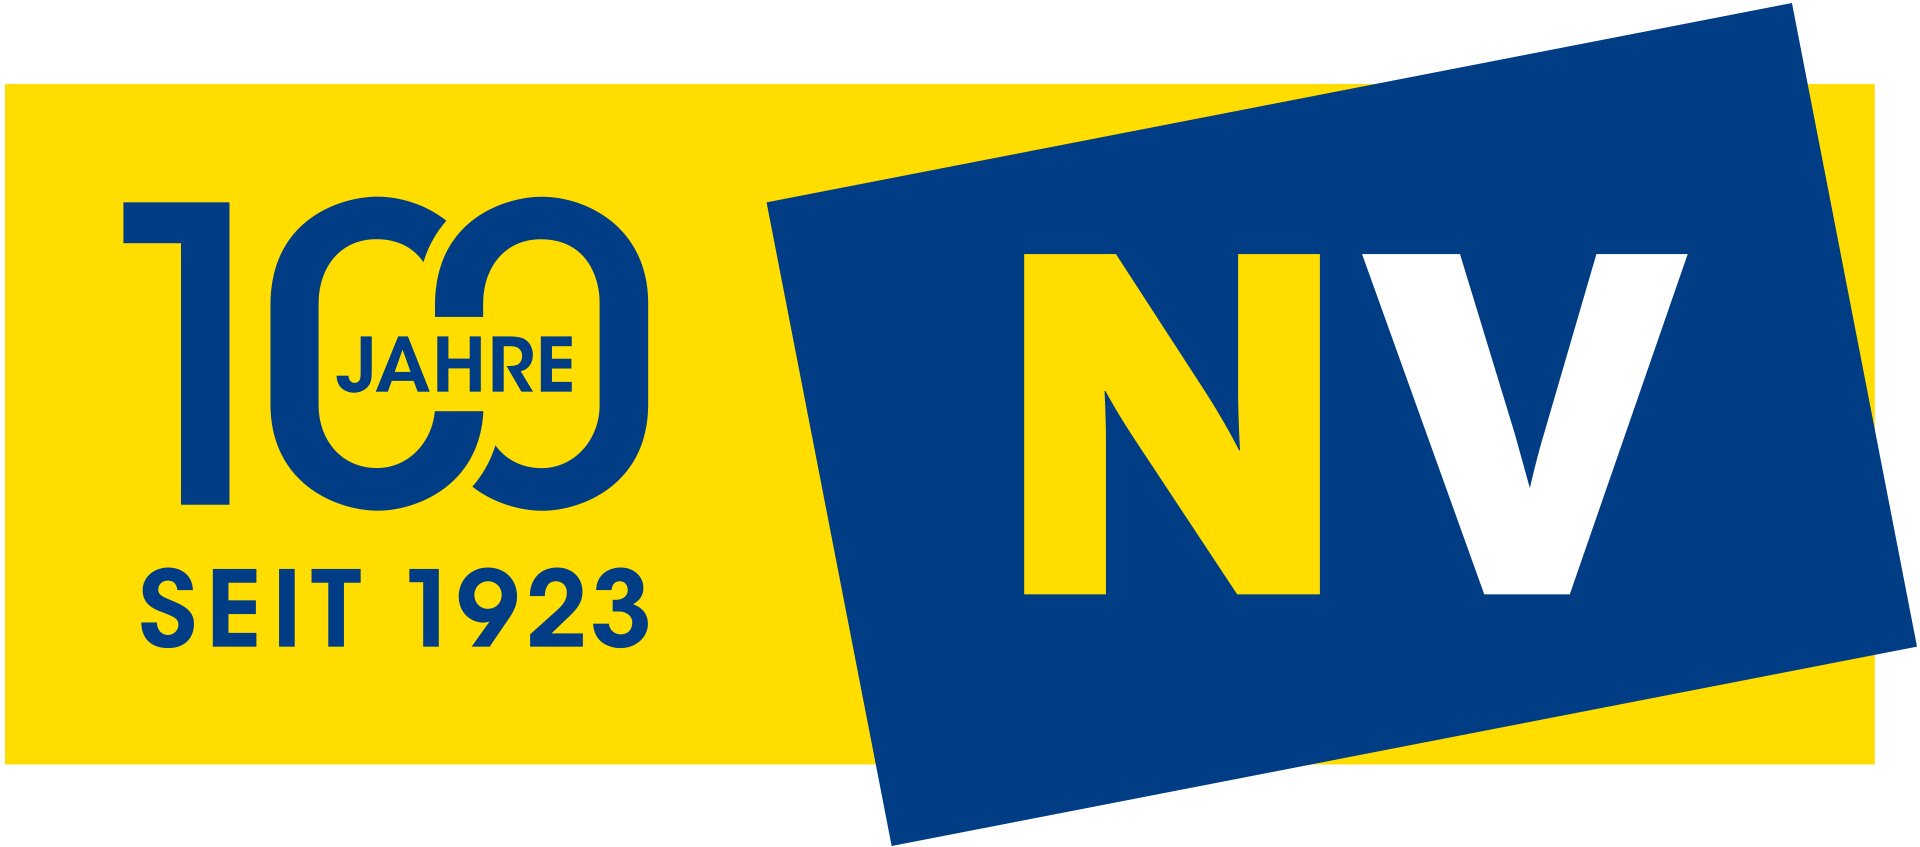 NV 100 Jahre Logo Quer v12 1920px RGB RZ 1 proc